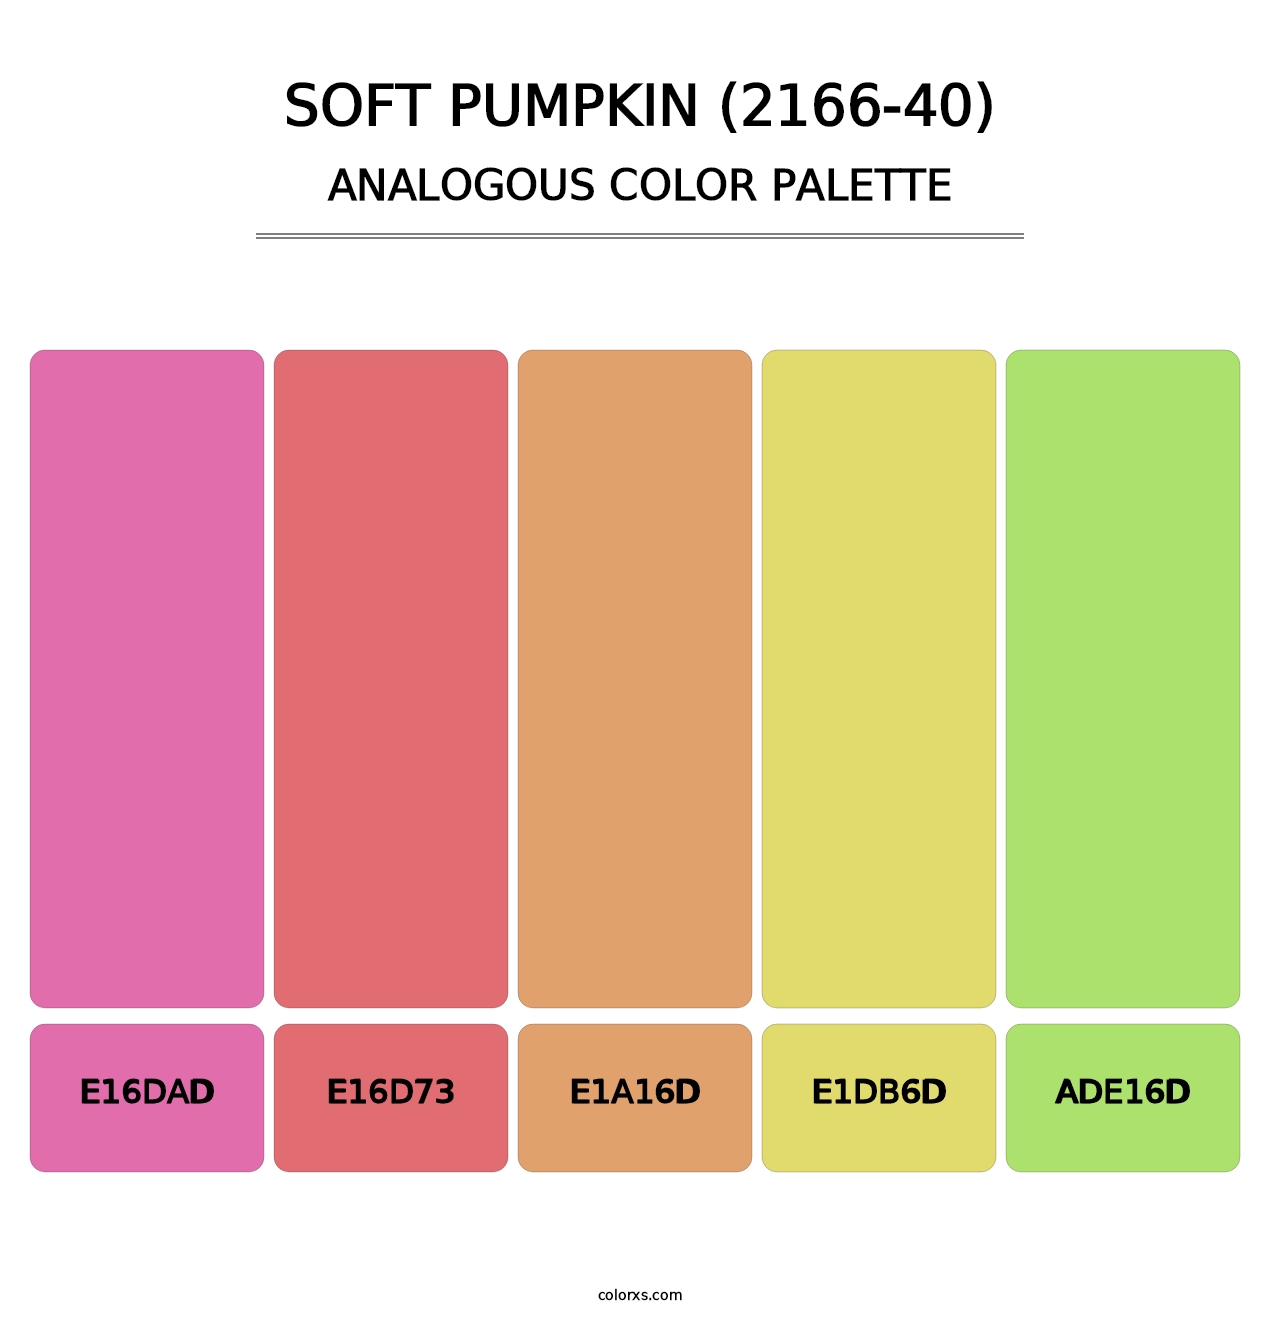 Soft Pumpkin (2166-40) - Analogous Color Palette